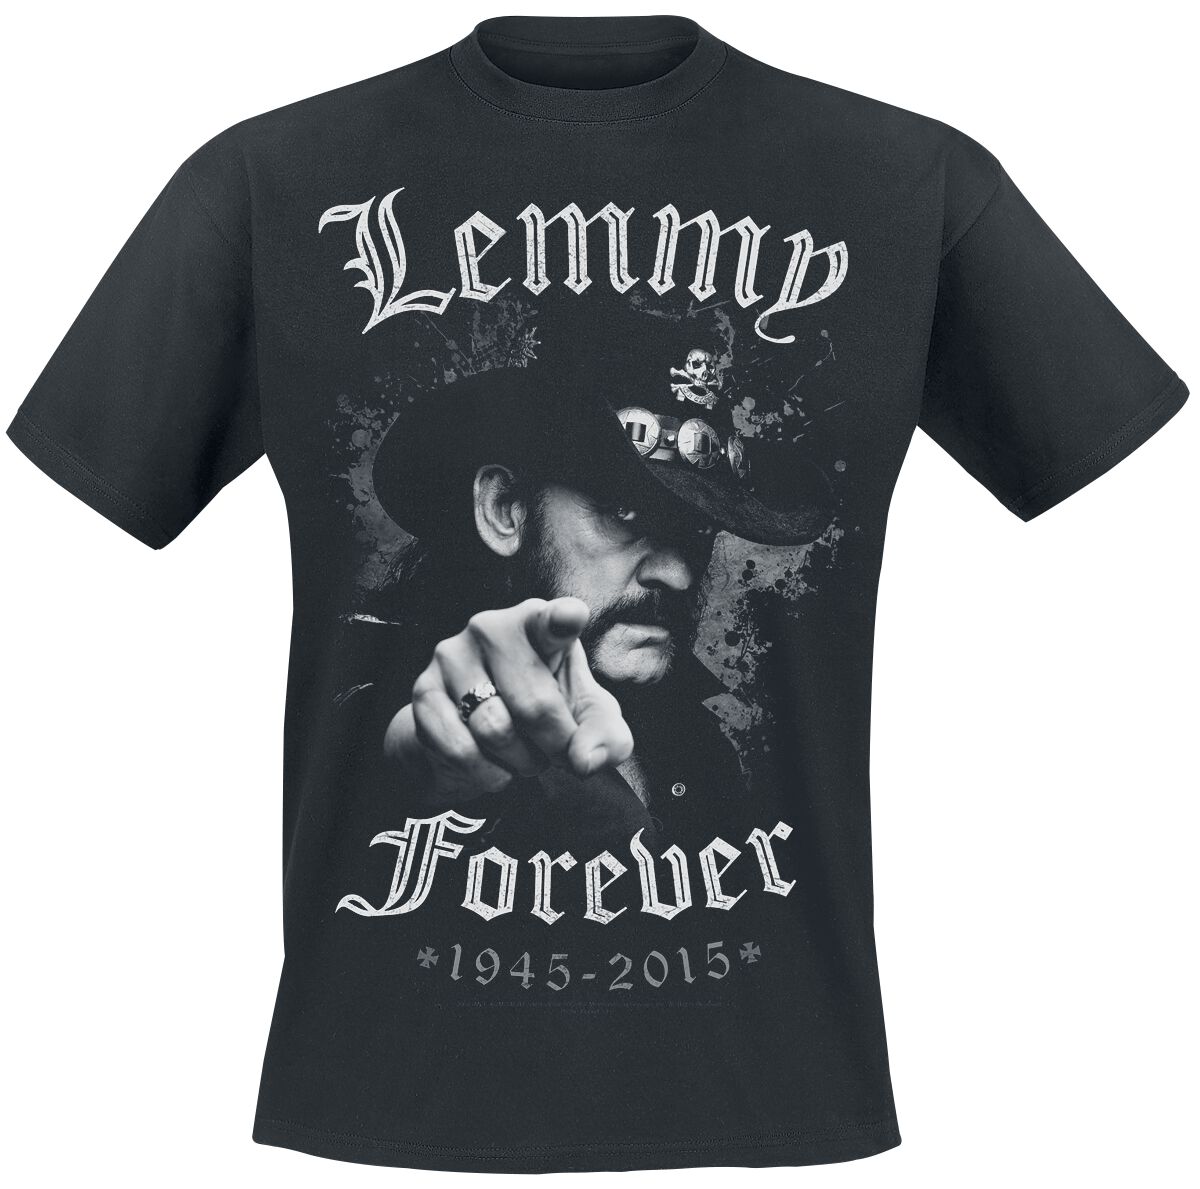 Motörhead T-Shirt - Lemmy - Forever - M bis 5XL - für Männer - Größe 4XL - schwarz  - EMP exklusives Merchandise!